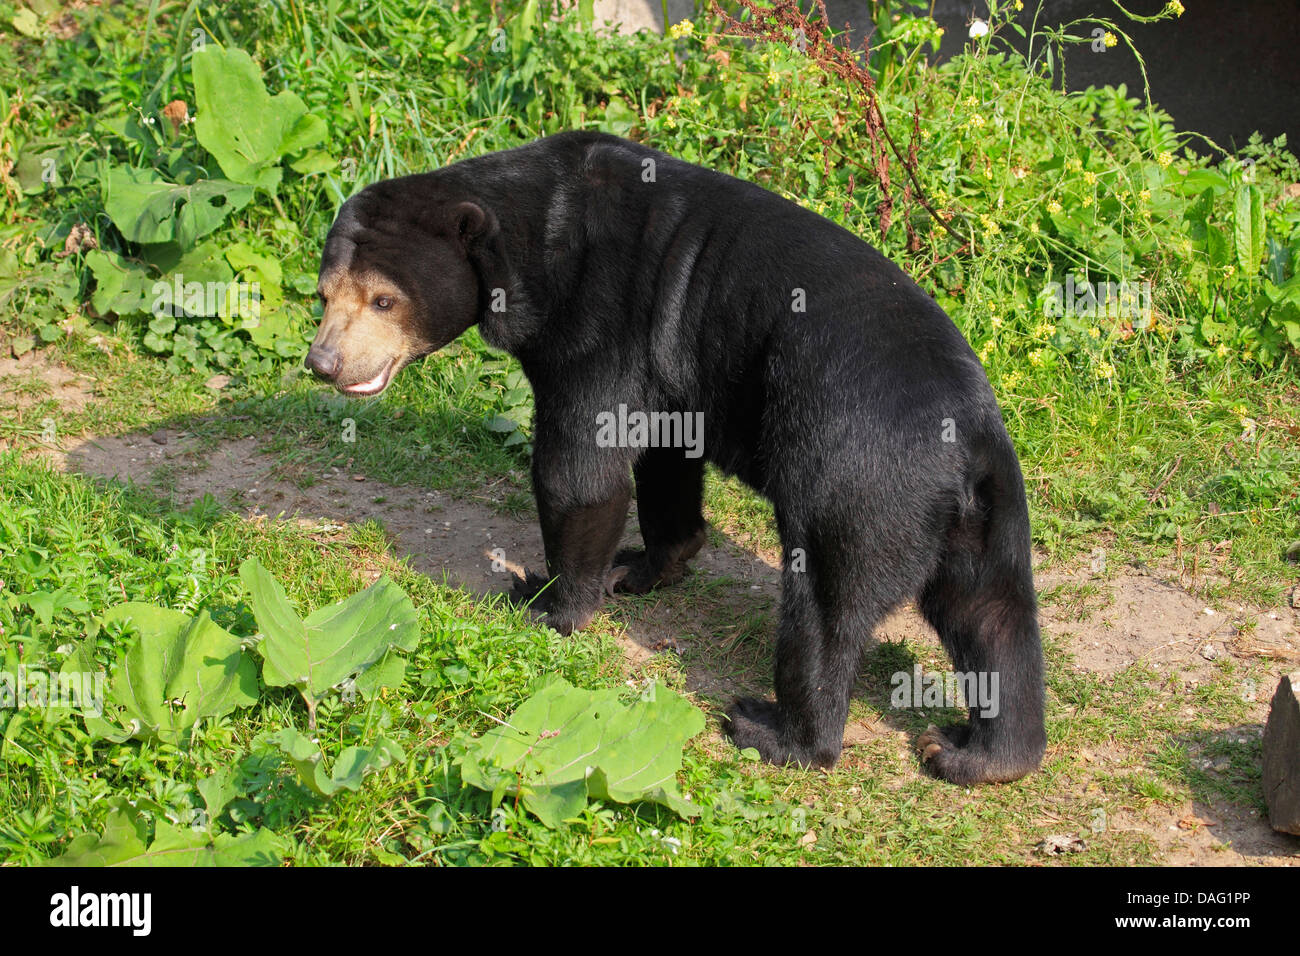 sun bear, Malayan sun bear (Ursus malayanus, Helarctos malayanus), standing on a meadow path Stock Photo